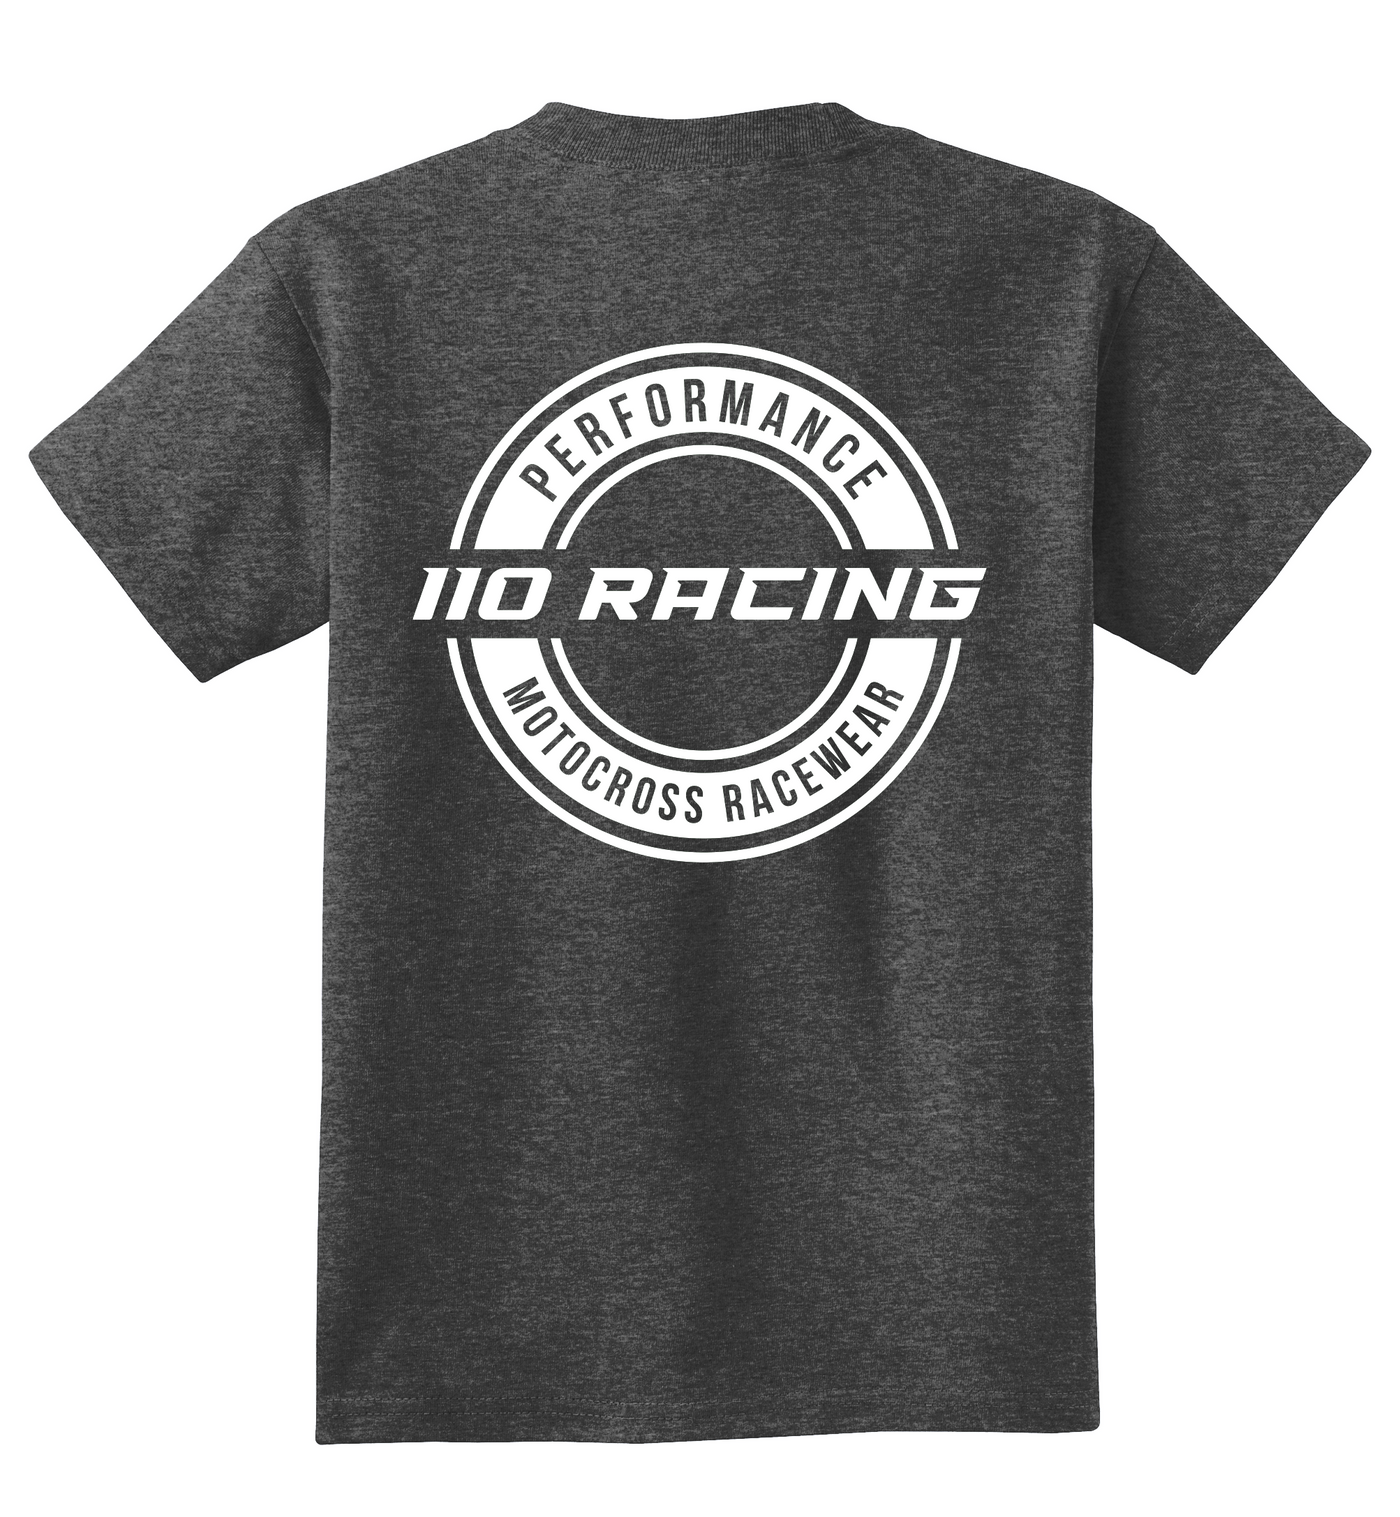 110 RACING // PERFORMANCE TEE YOUTH - GREY